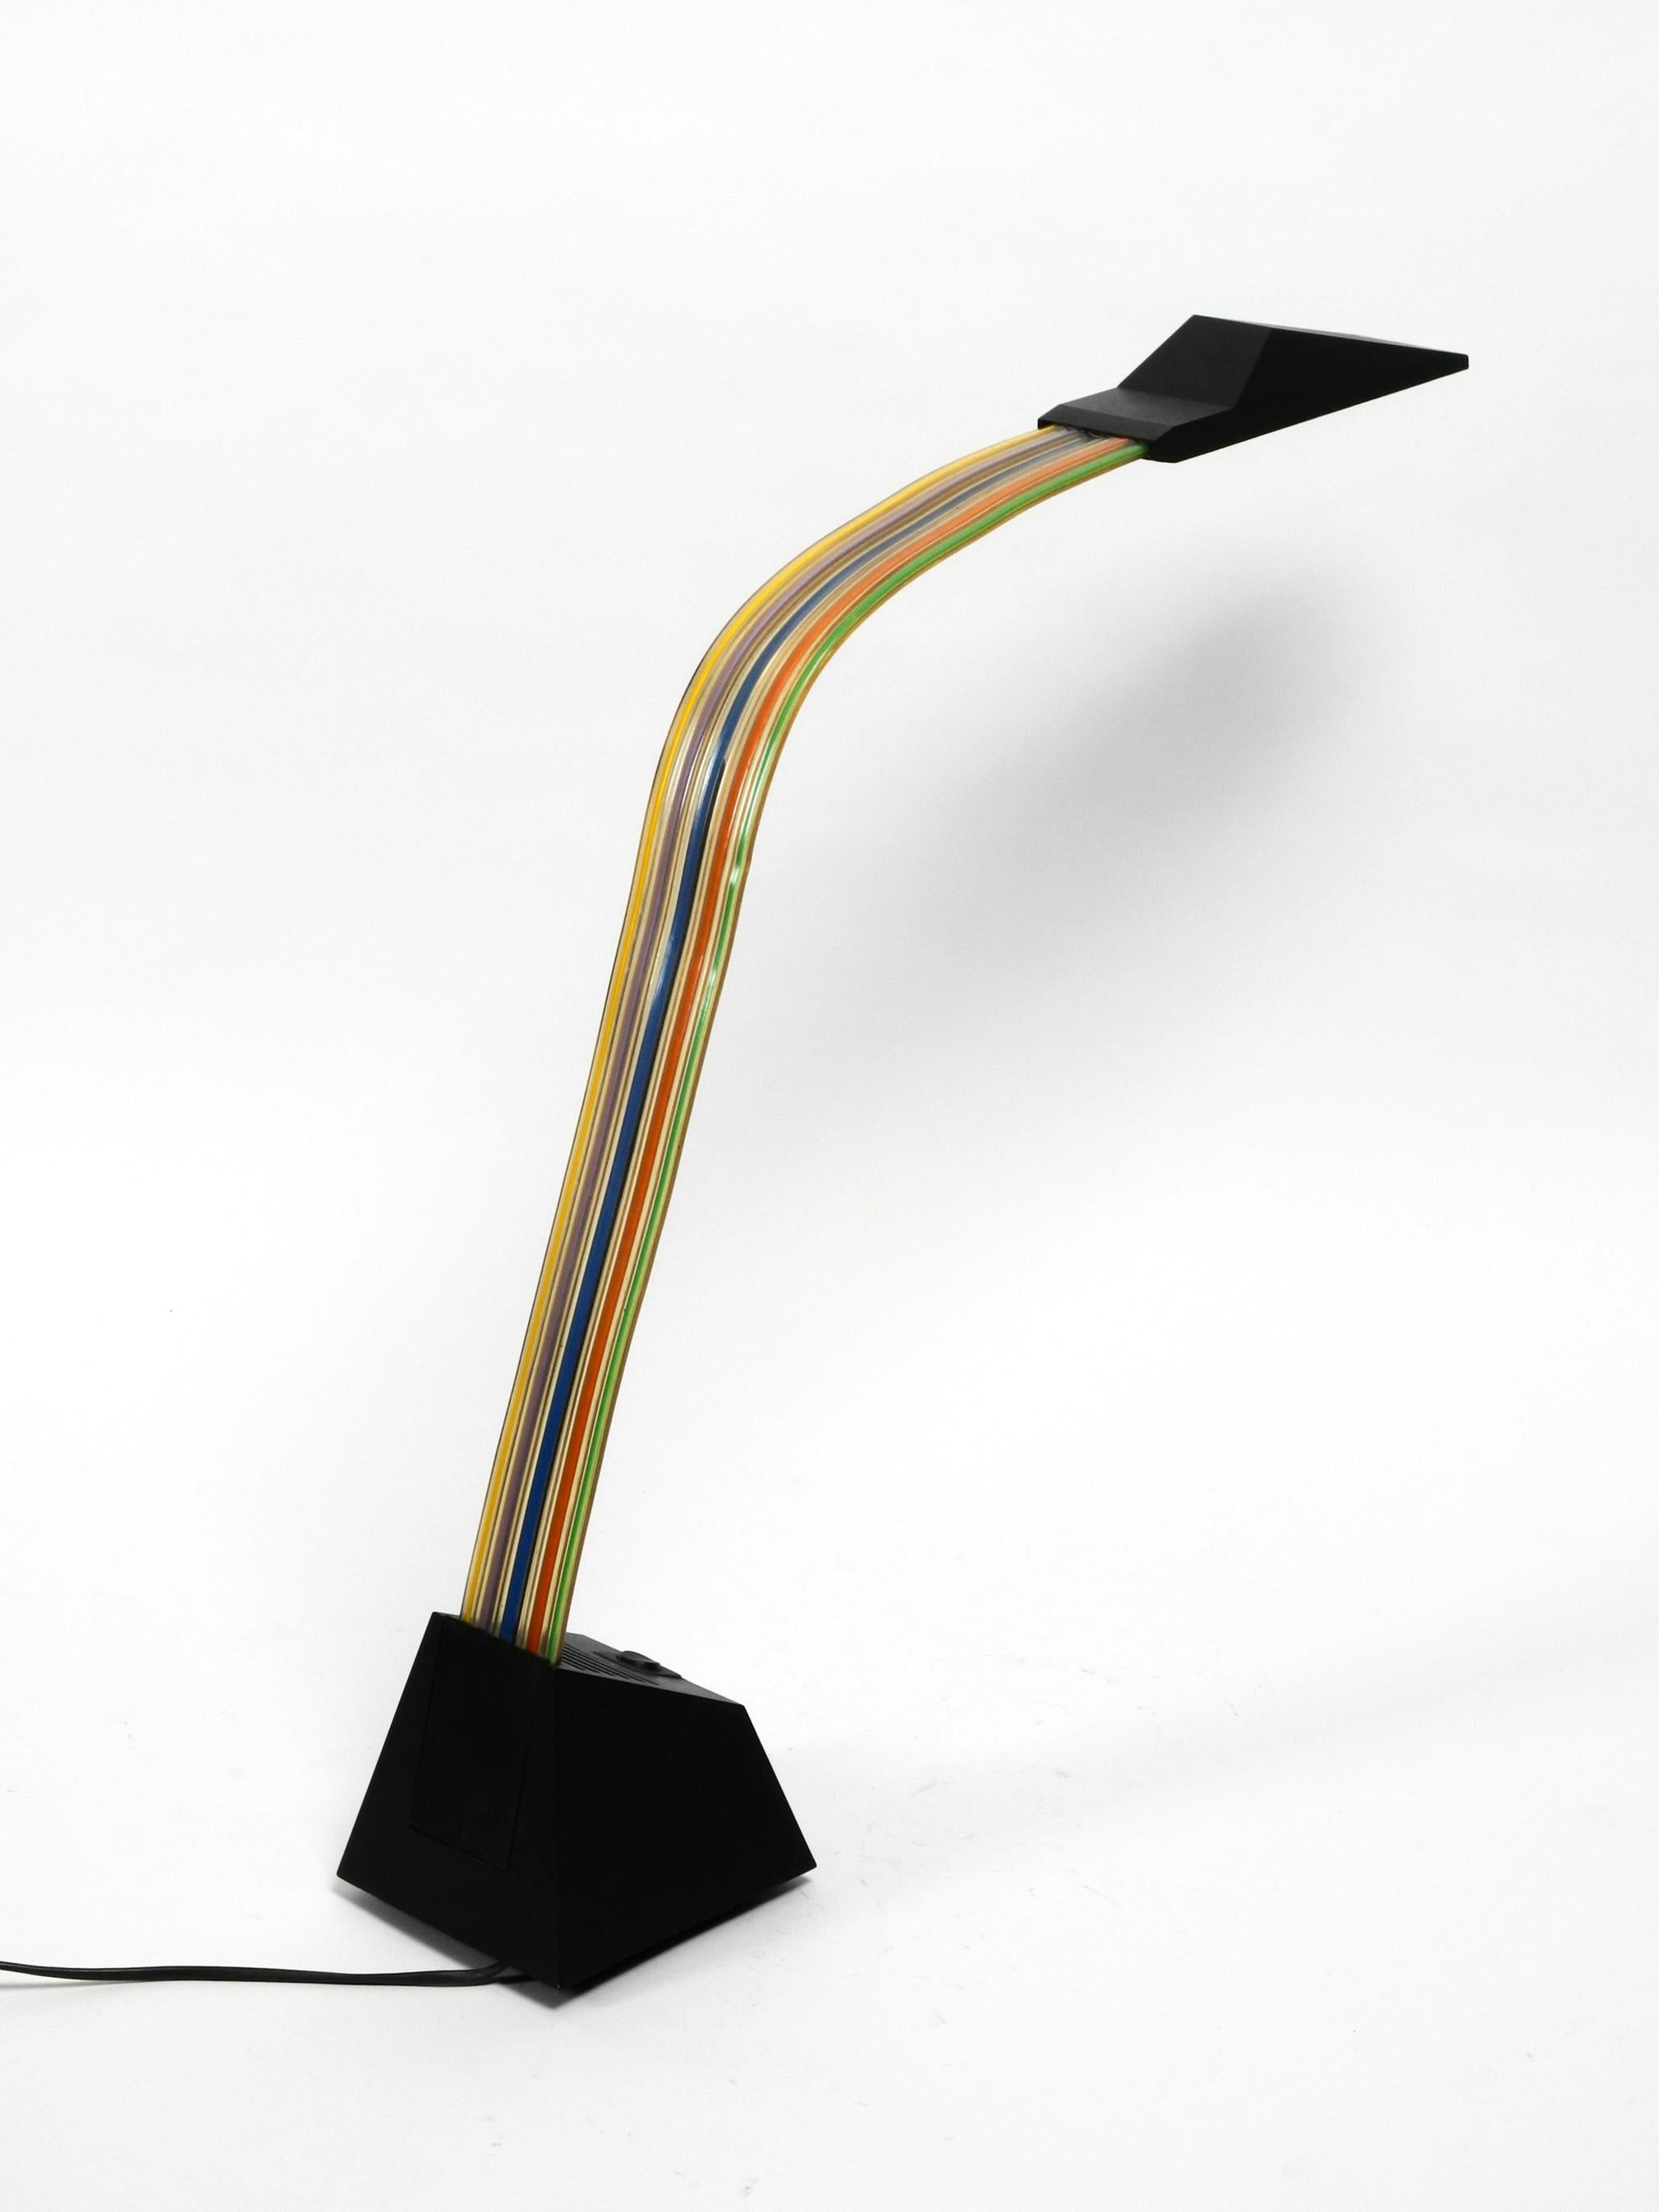 Post-Modern Large Halogen Table Lamp by Alberto Fraser for Stilnovo 1980s Postmodern Design For Sale